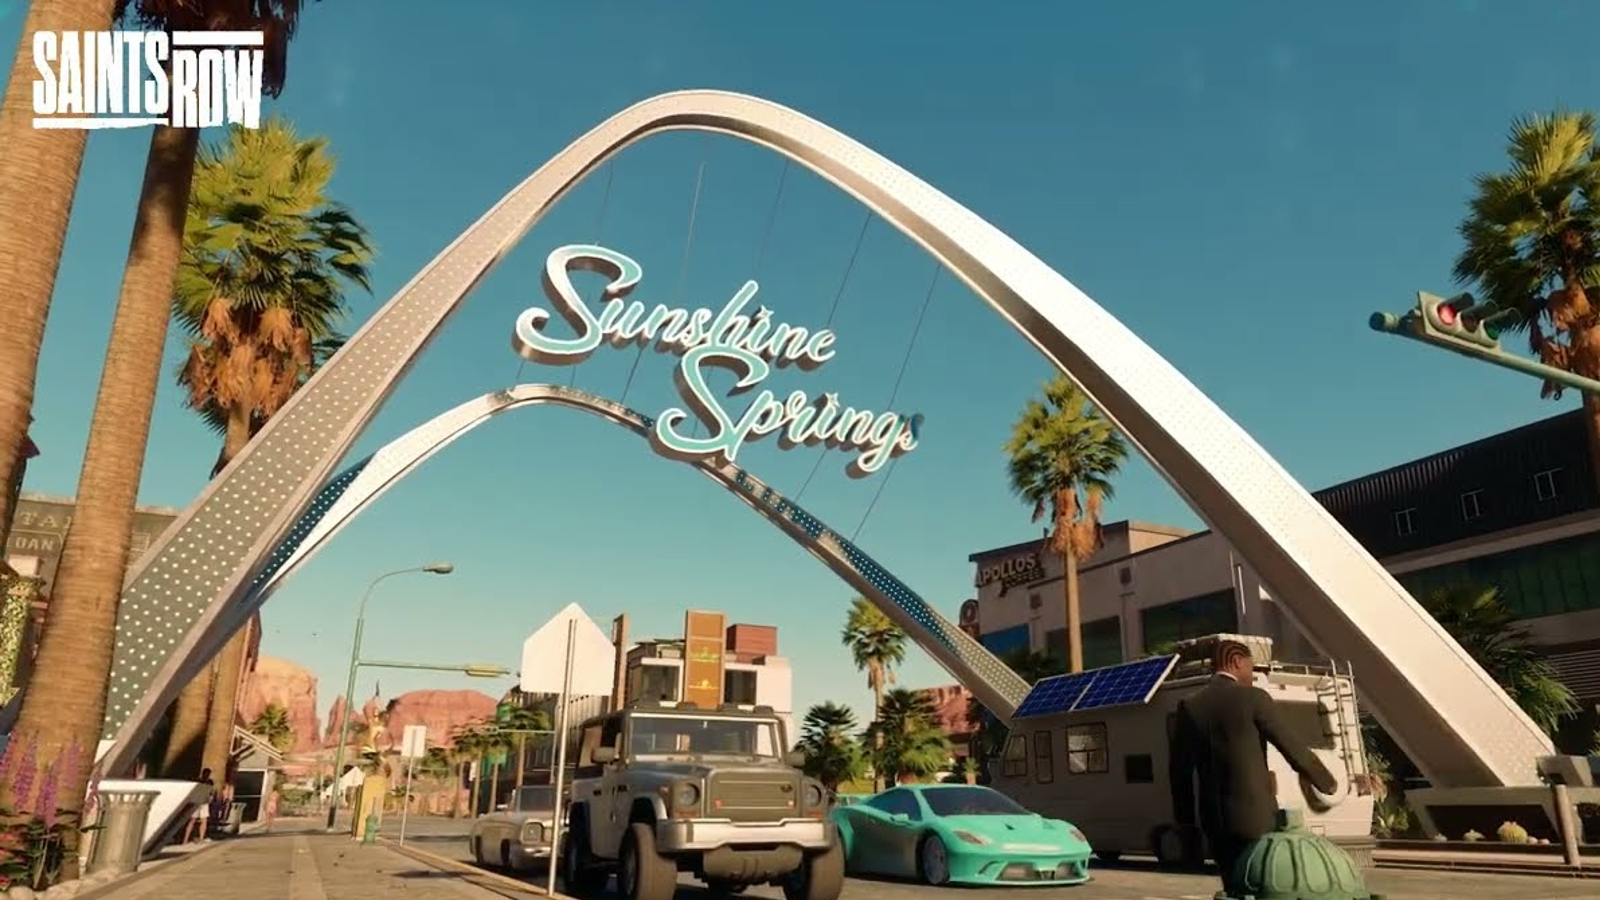 Saints Row: un trailer presenta il distretto di Sunshine Springs, in arrivo con un update gratis